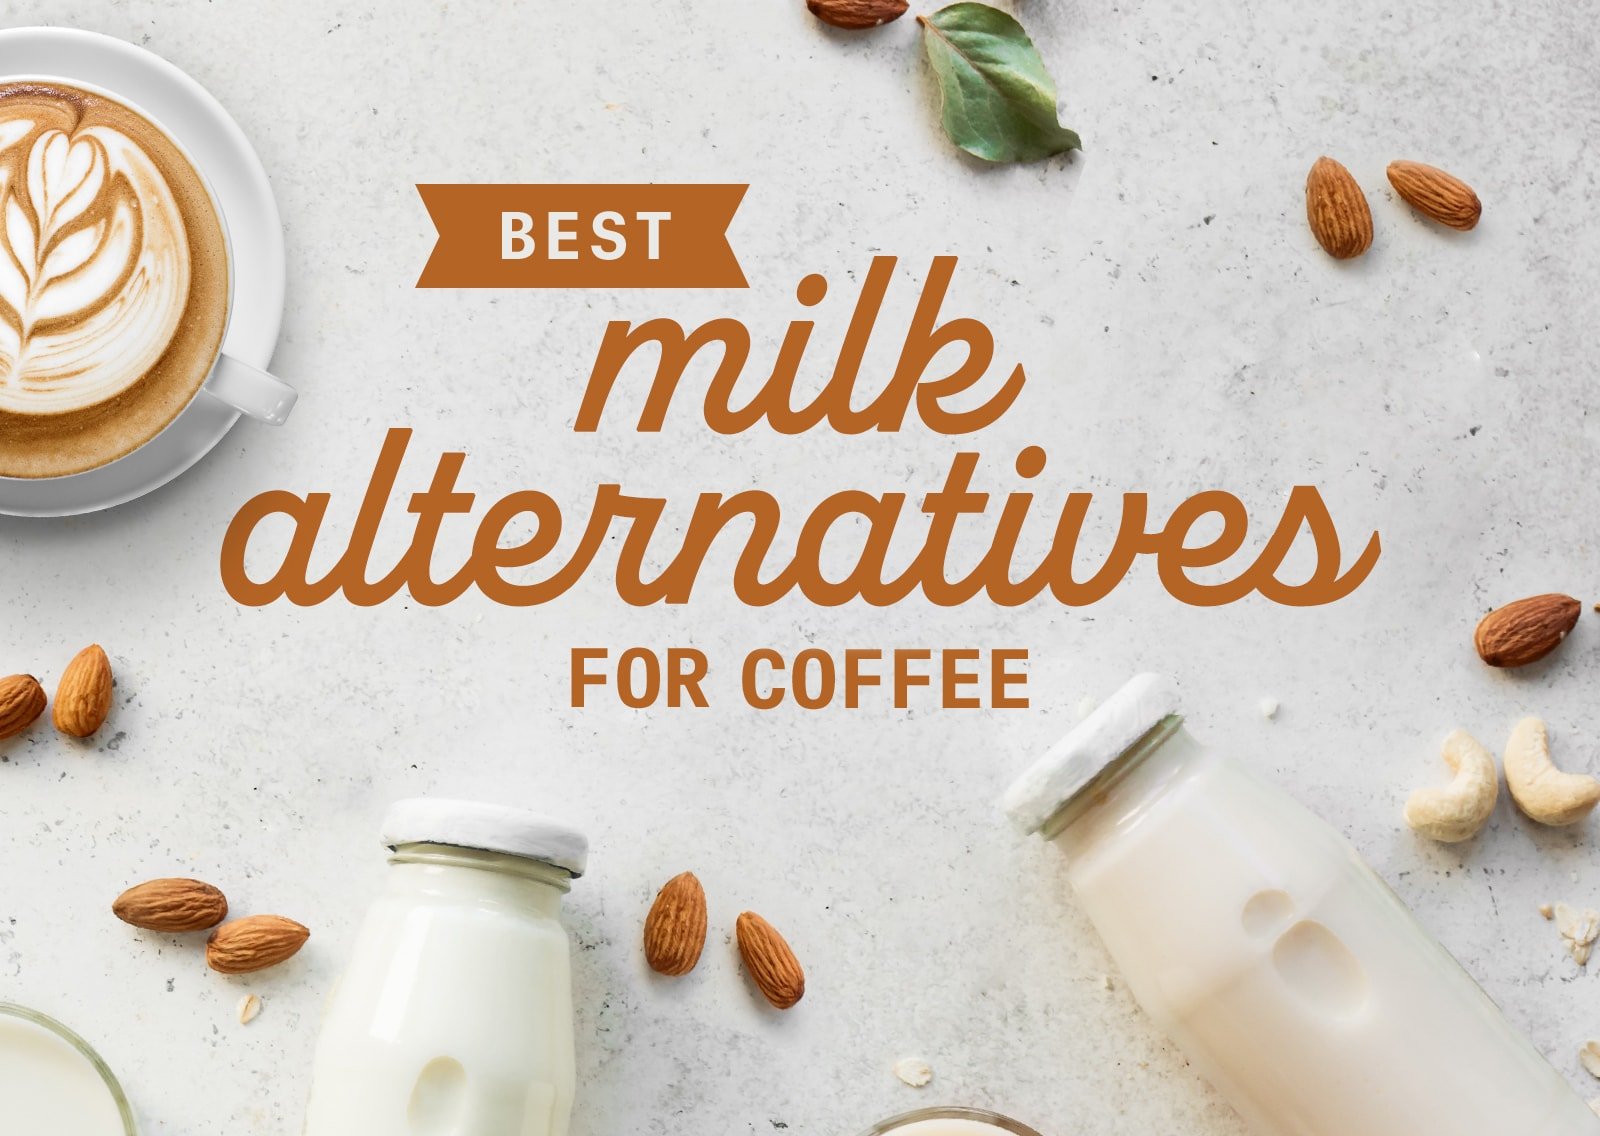 https://cdnimg.webstaurantstore.com/images/blogs/2428/milk-alternatives_feature.jpg